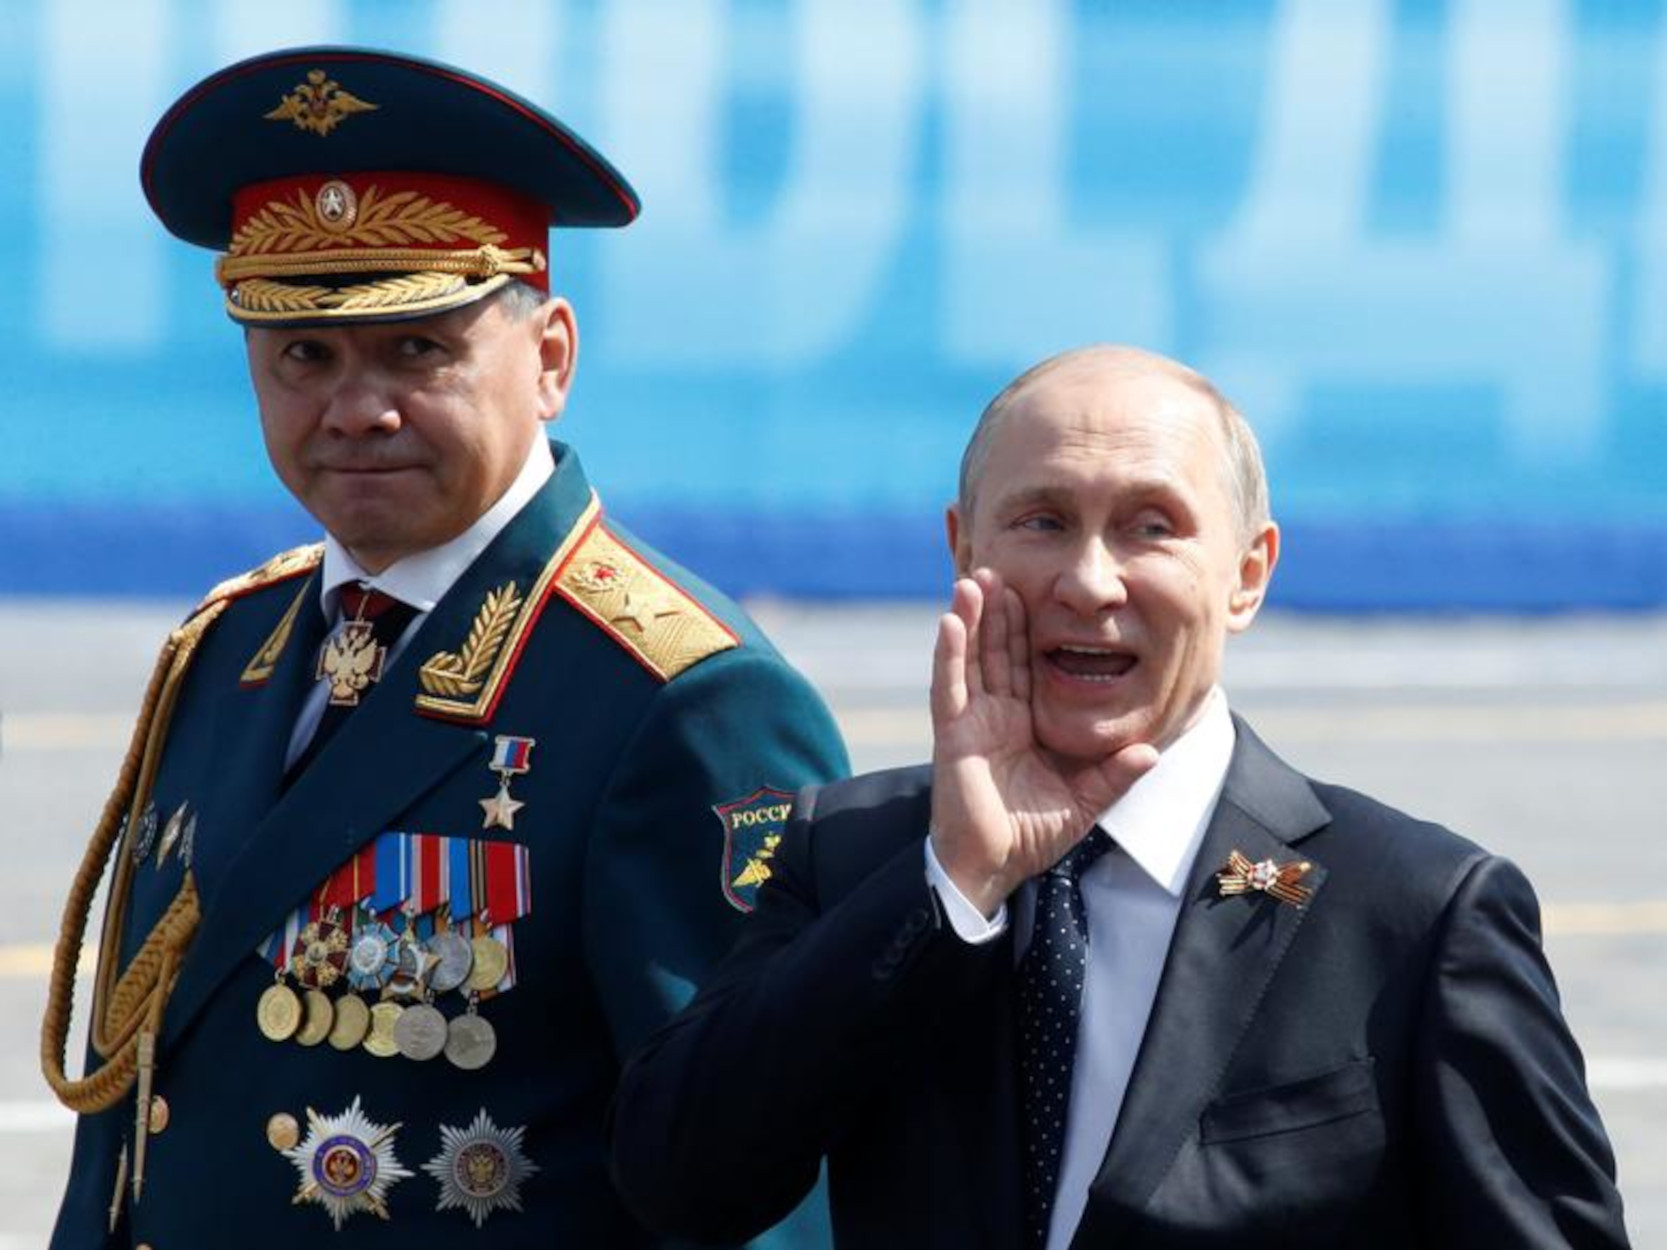 Ουκρανία: «Ο Πούτιν παραγκωνίζει τον Σοϊγκού εξαιτίας της εξέλιξης του πολέμου» λέει η Βρετανία